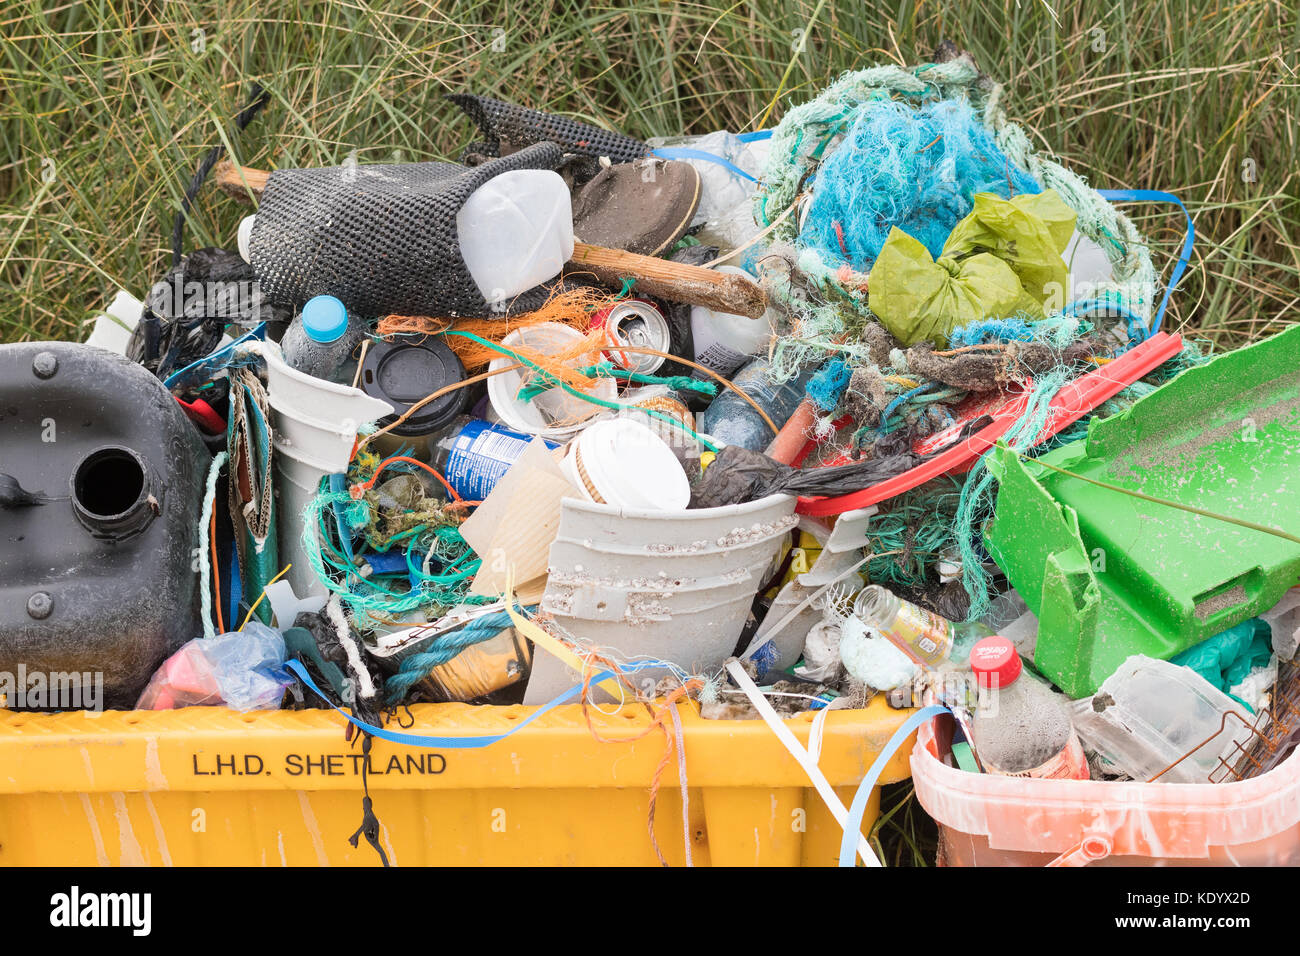 Plastique et autres déchets collectés sur la plage des îles Shetland, Écosse, Royaume-Uni Banque D'Images